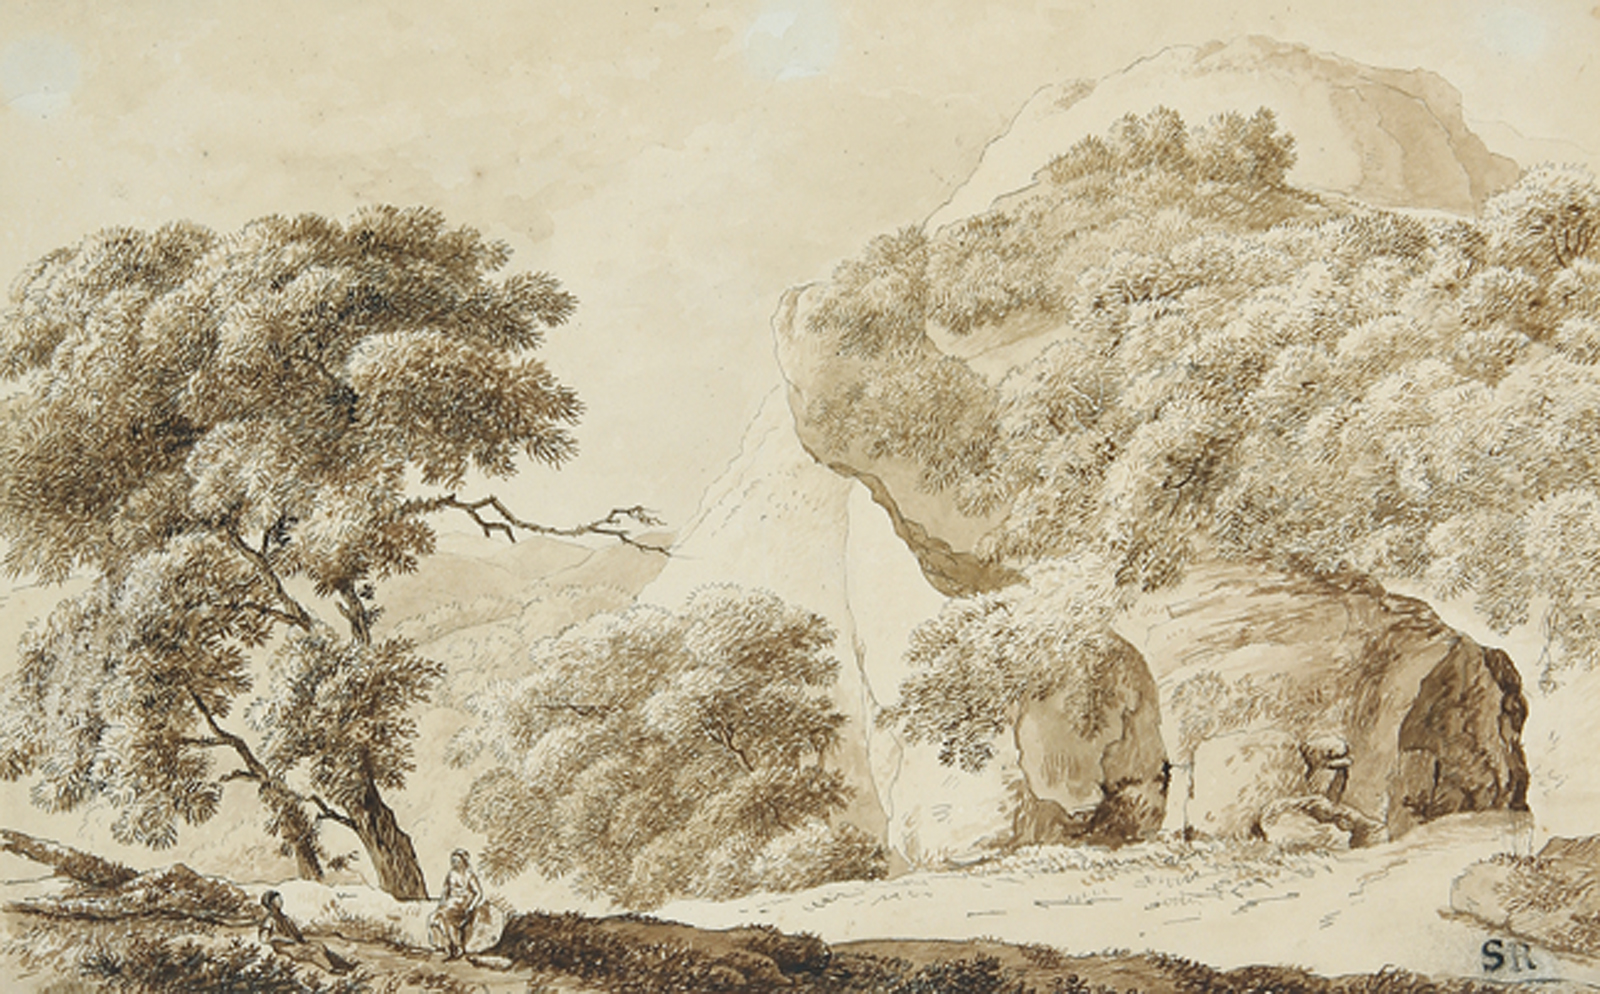 Südliche Landschaft mit rastendem Paar nahe einer Felshöhle.